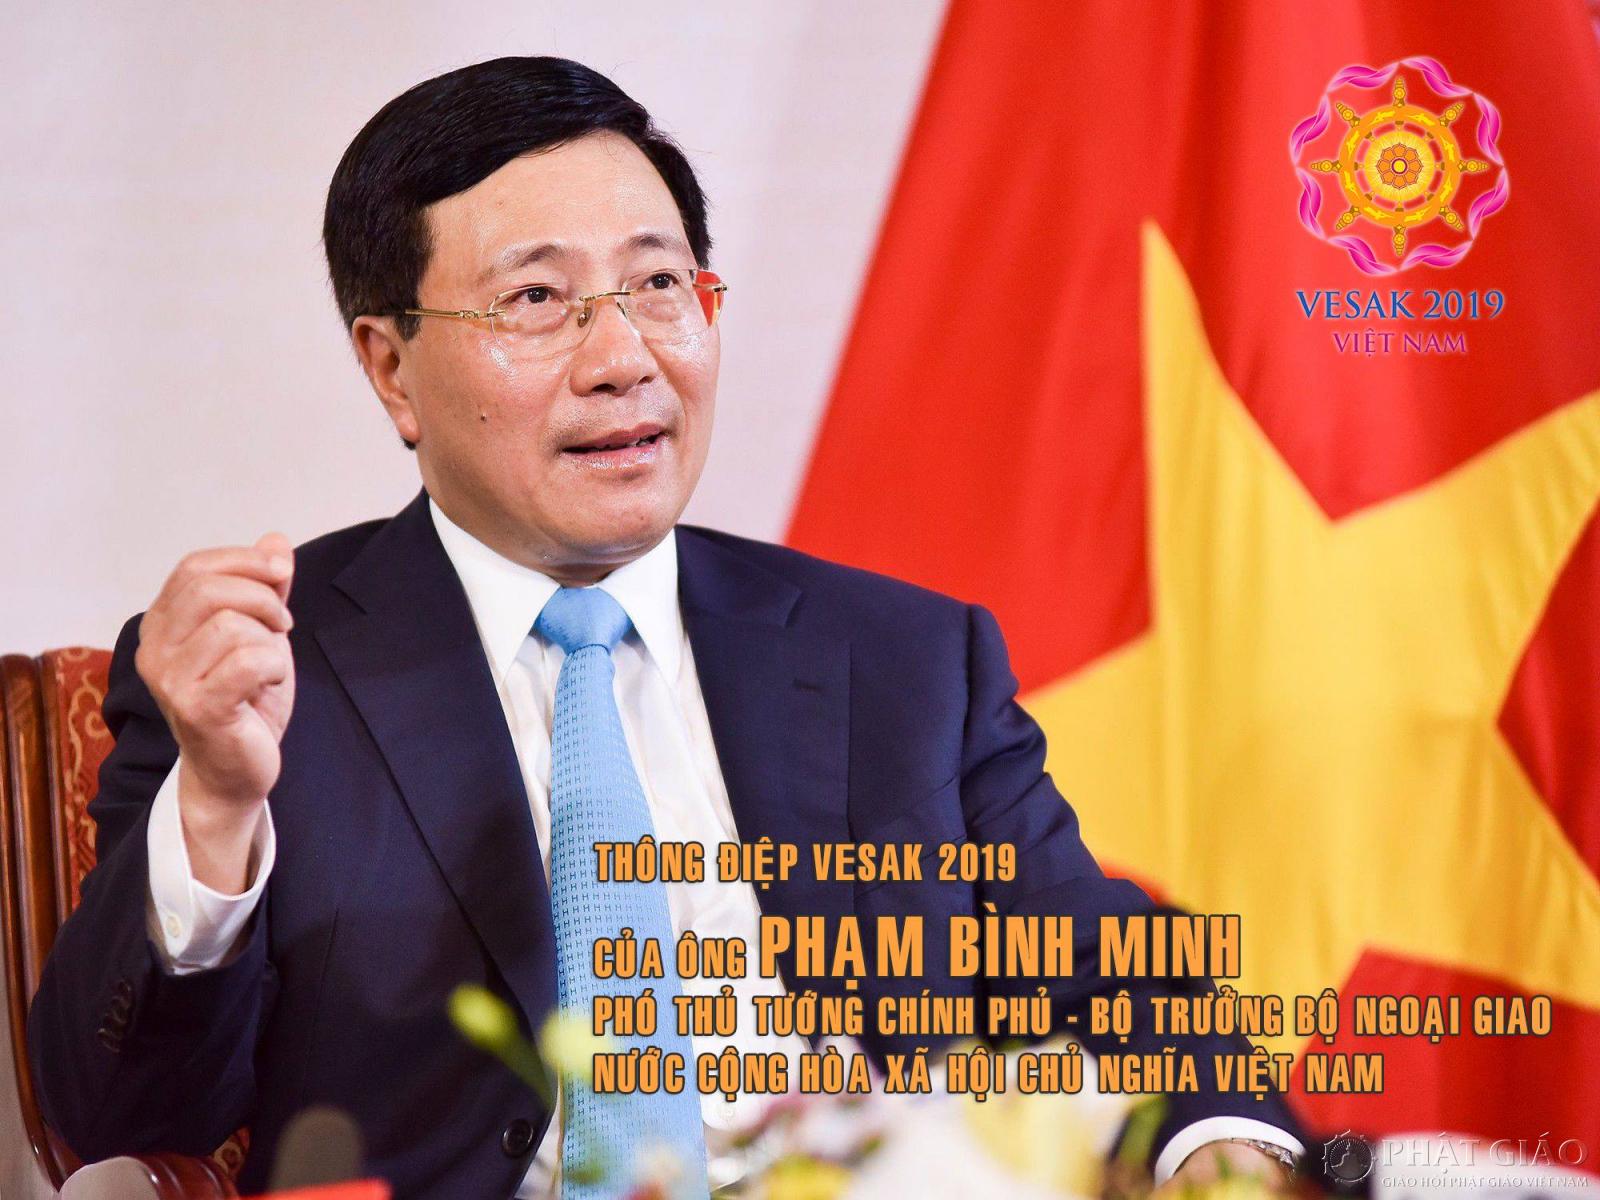 Phó Thủ tướng Phạm Bình Minh: Tôi hy vọng rằng các cuộc thảo luận trong khuôn khổ Đại lễ sẽ đạt nhiều kết quả, thắt chặt tinh hữu nghị, hợp tác giữa các dân tộc và các nền văn hóa và cùng đưa những giá trị tốt đẹp của đạo Phật vào cuộc sống. ẢNH: VESAK 2019